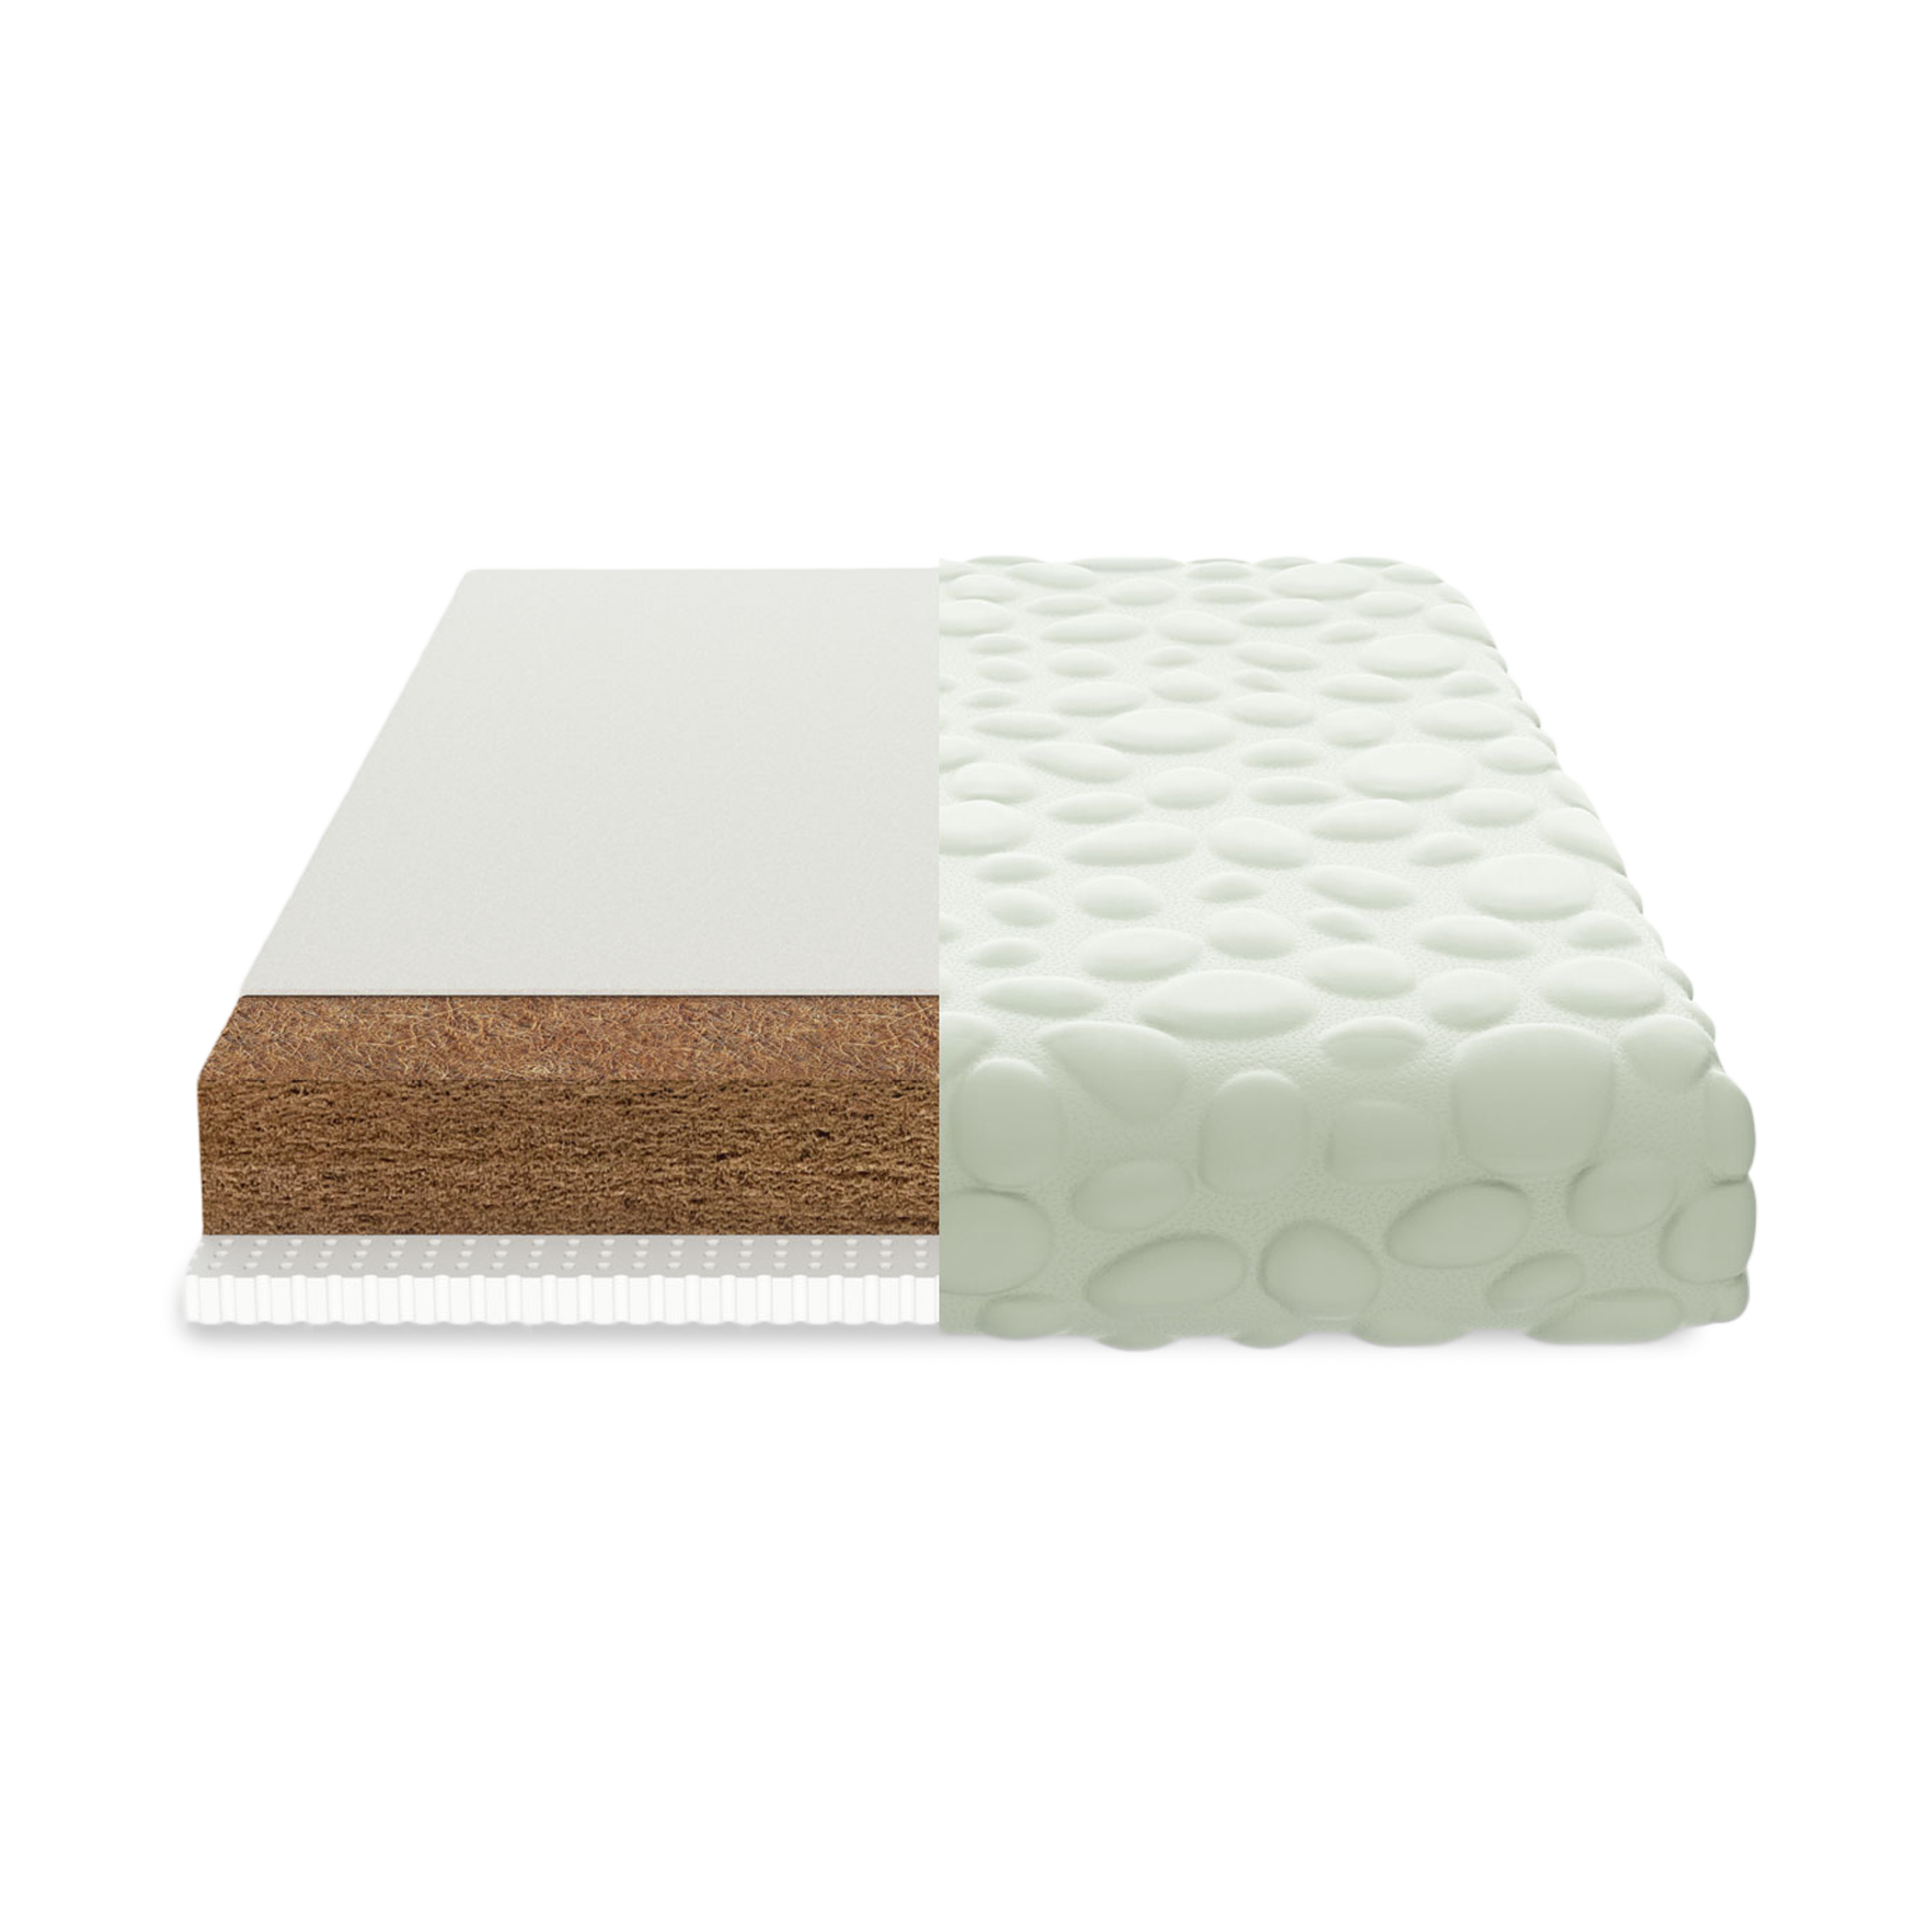 organic mini crib mattress pad